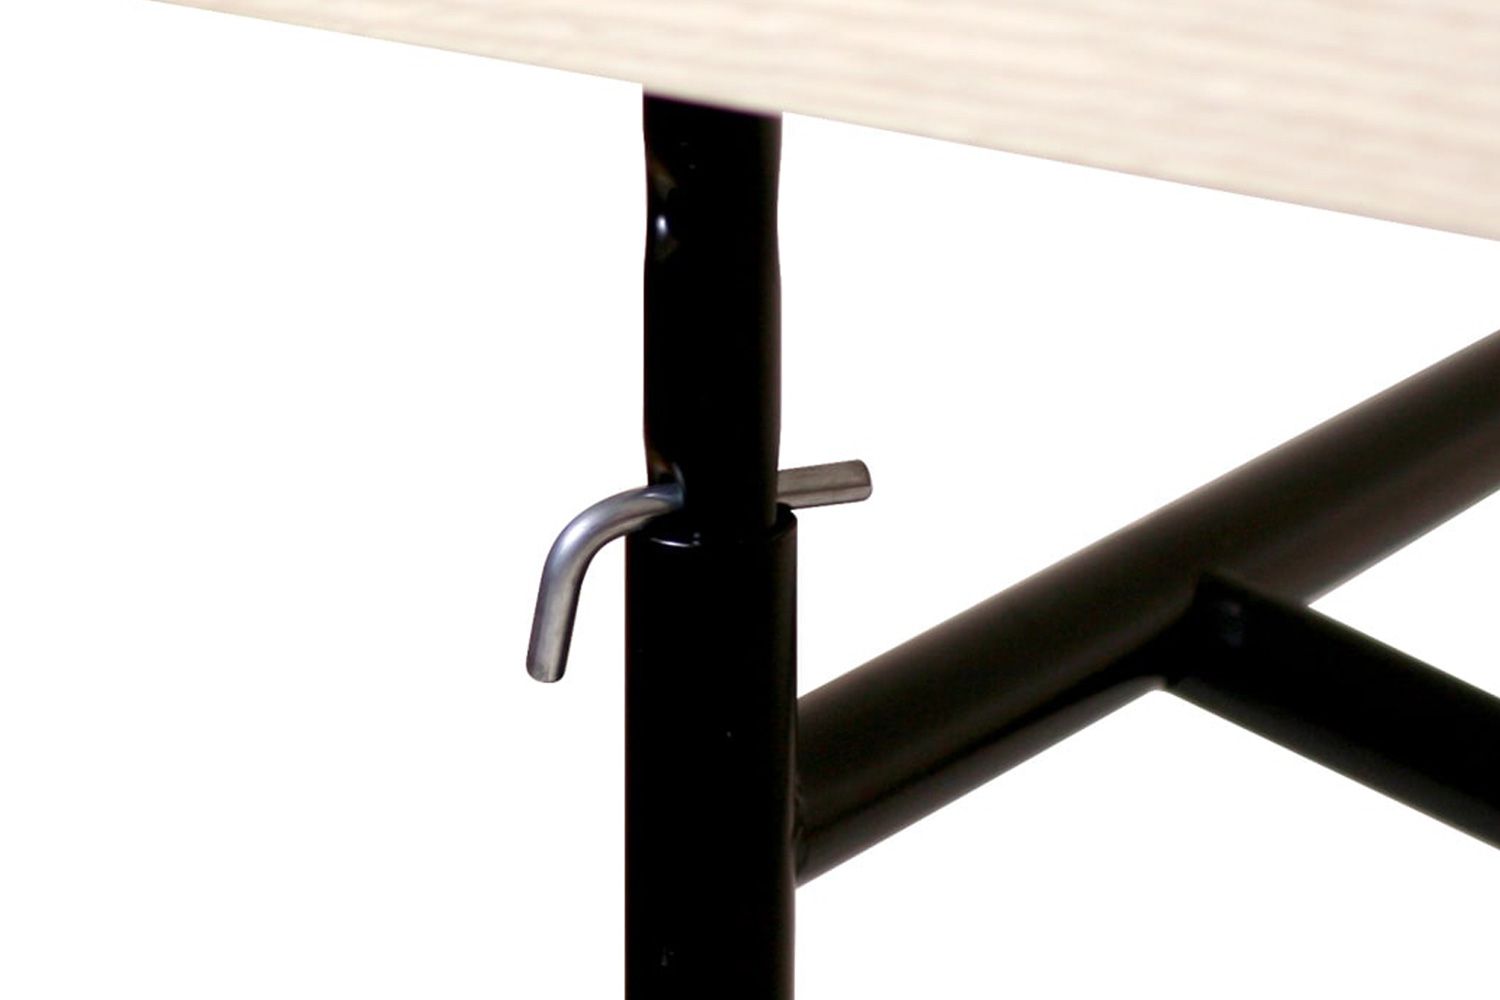 リチャード ランパート アイアーマン テーブル 2 リノリウム ぺブルグレー 可動パイプを上下させ、L字金具を差し込むだけで、天板の高さを変更できる昇降テーブルです。